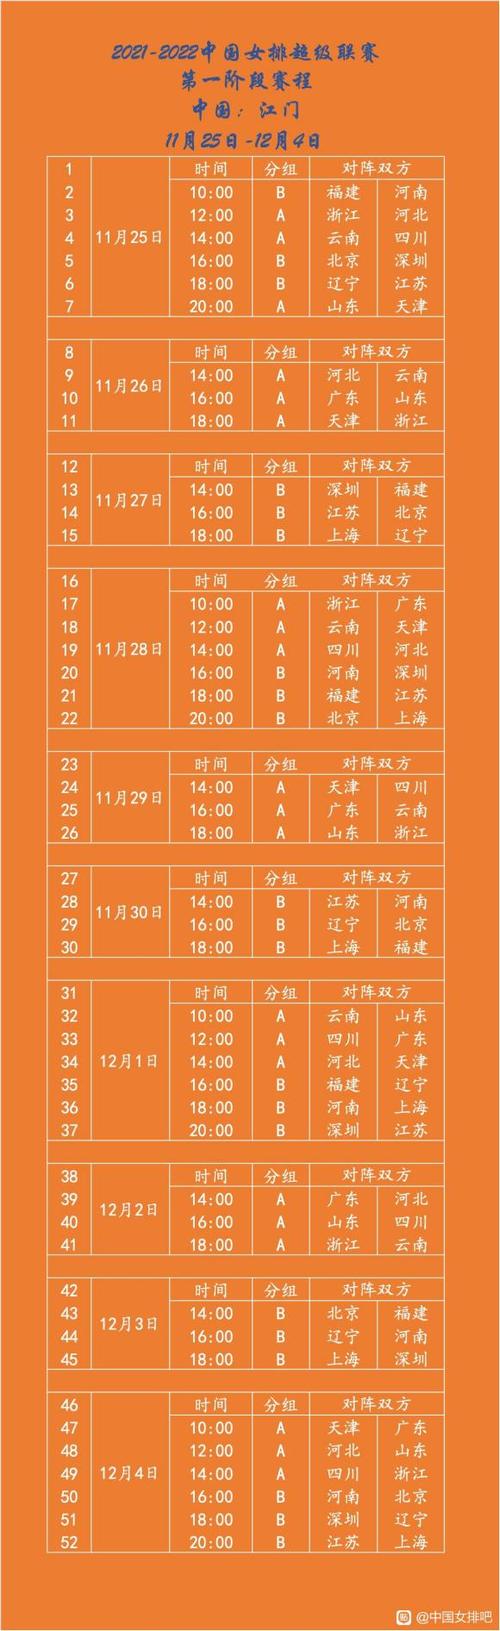 2021-2022中国女子排球联赛第一阶段赛程表